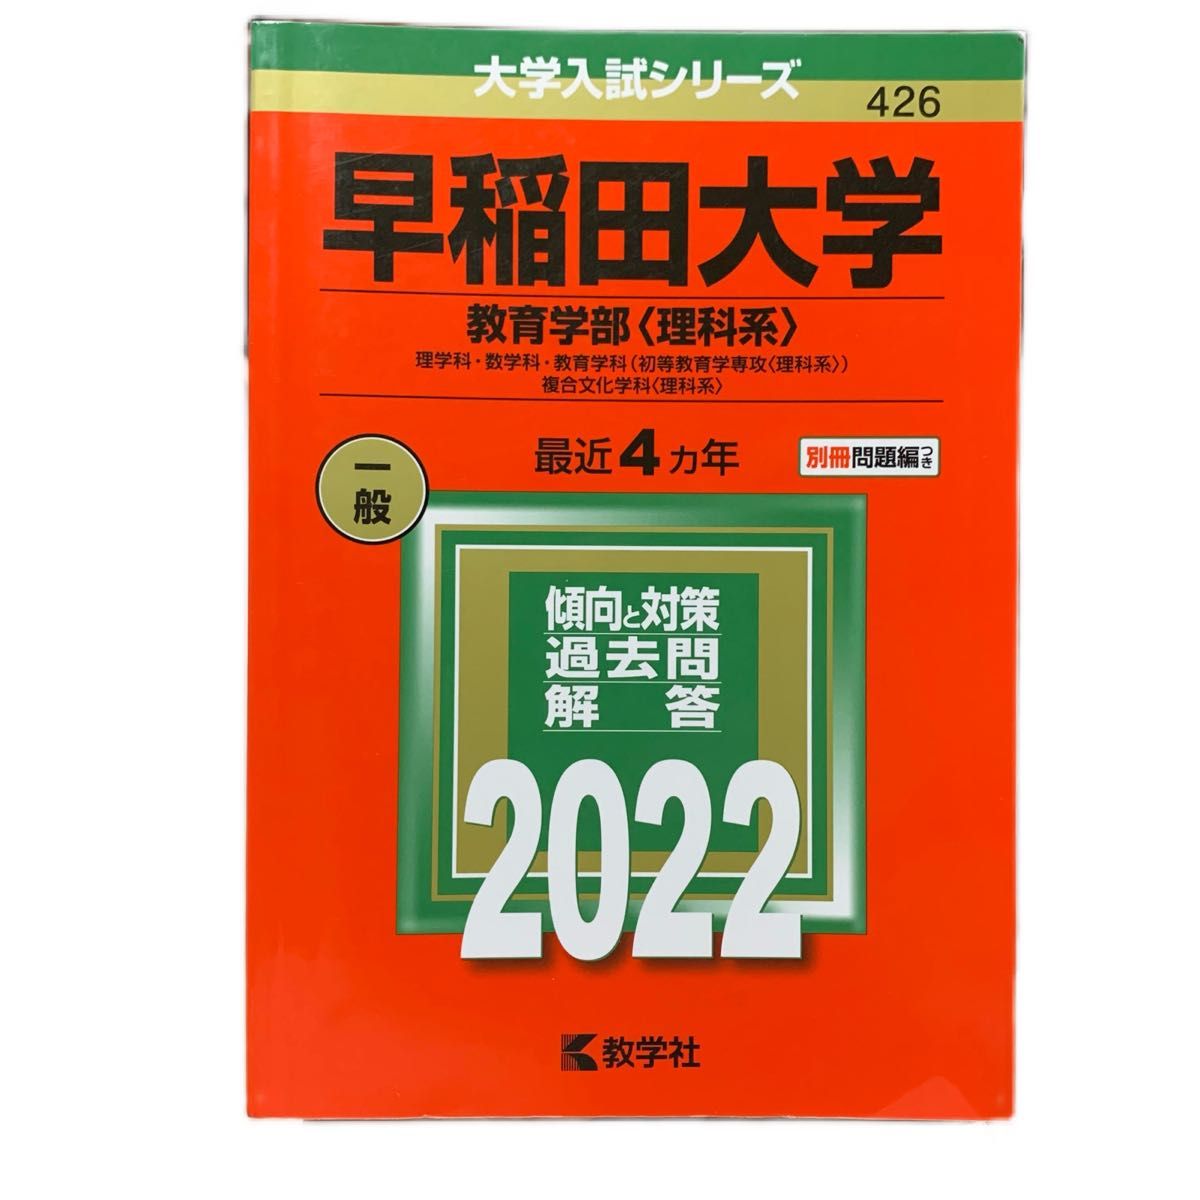 早稲田大学教育学部(理科系) 大学入試シリーズ 教学社 赤本 2022